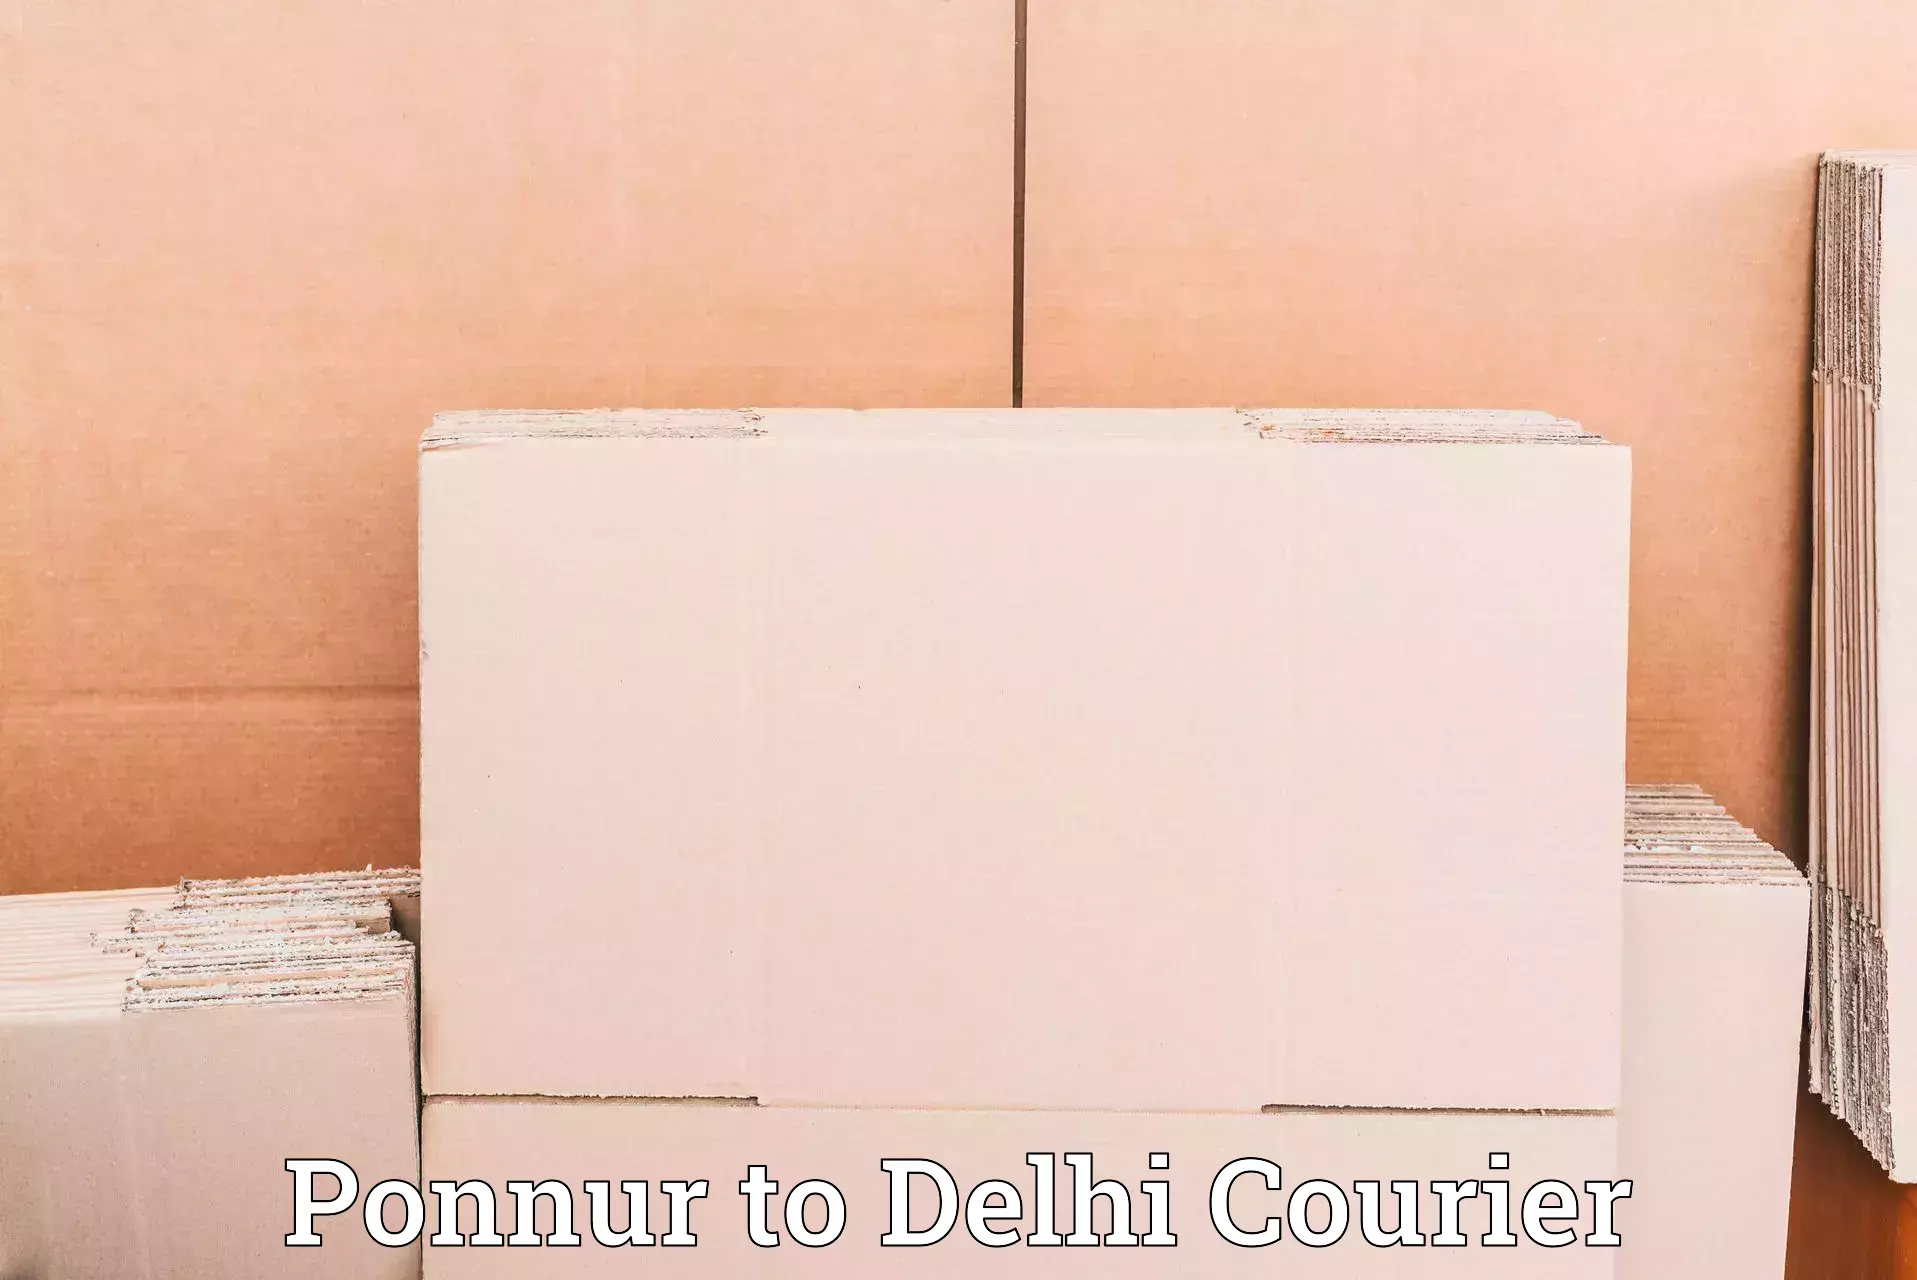 End-to-end delivery Ponnur to Jamia Millia Islamia New Delhi